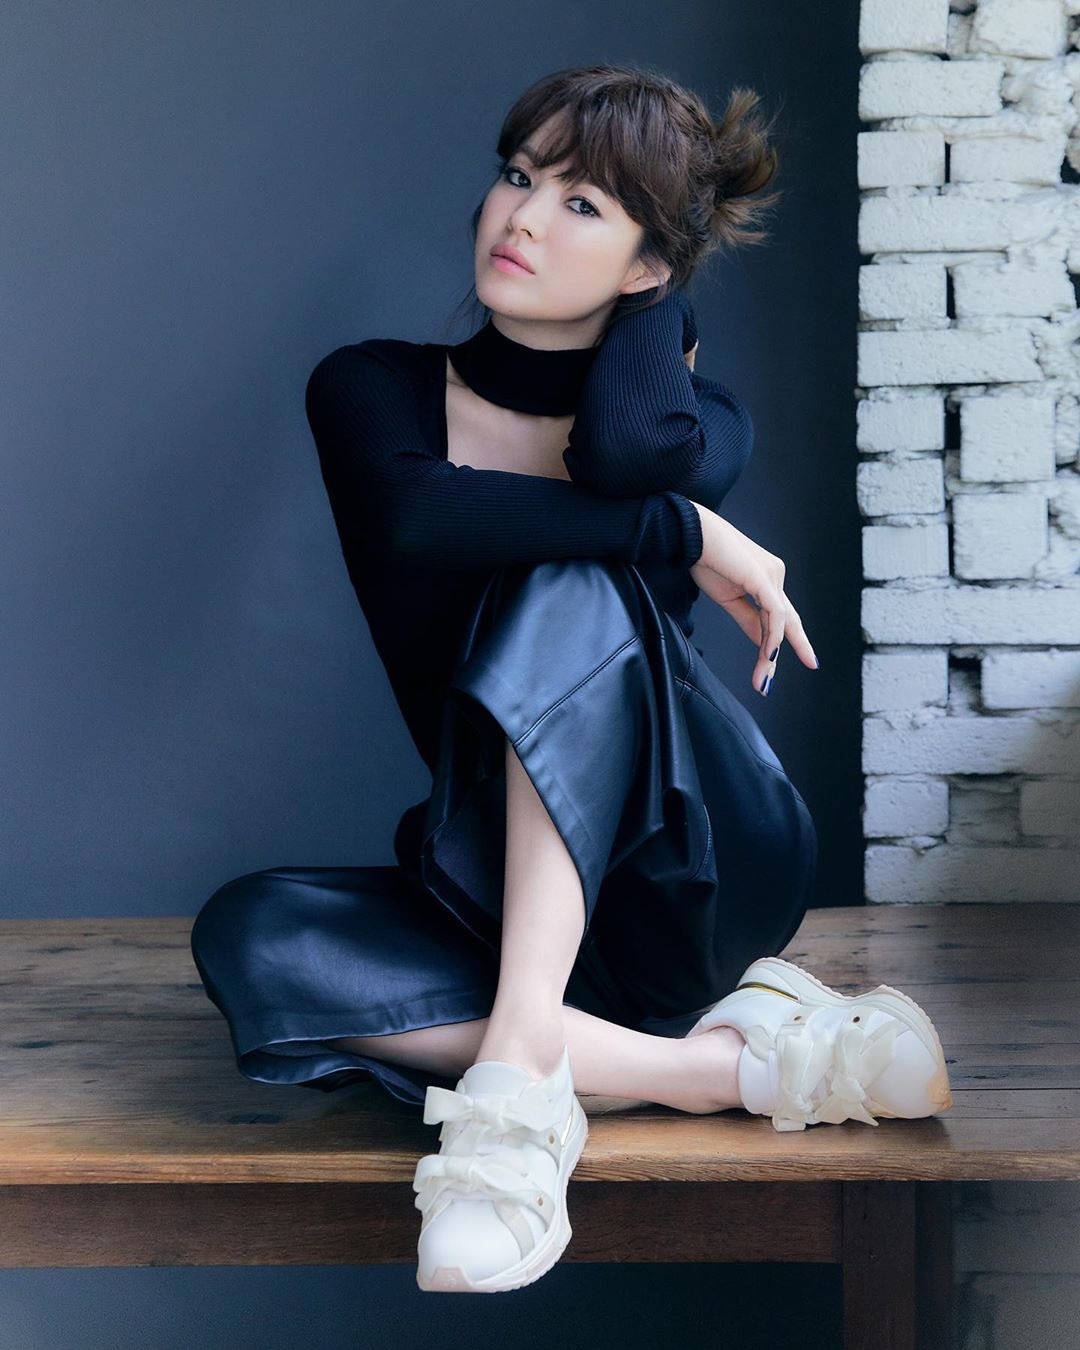 Song Hye Kyo &quot;chuyển phỏm&quot; cá tính mà sexy hết nút trong ảnh mới, nhìn còn hao hao style của Linh Ngọc Đàm mới tài - Ảnh 2.